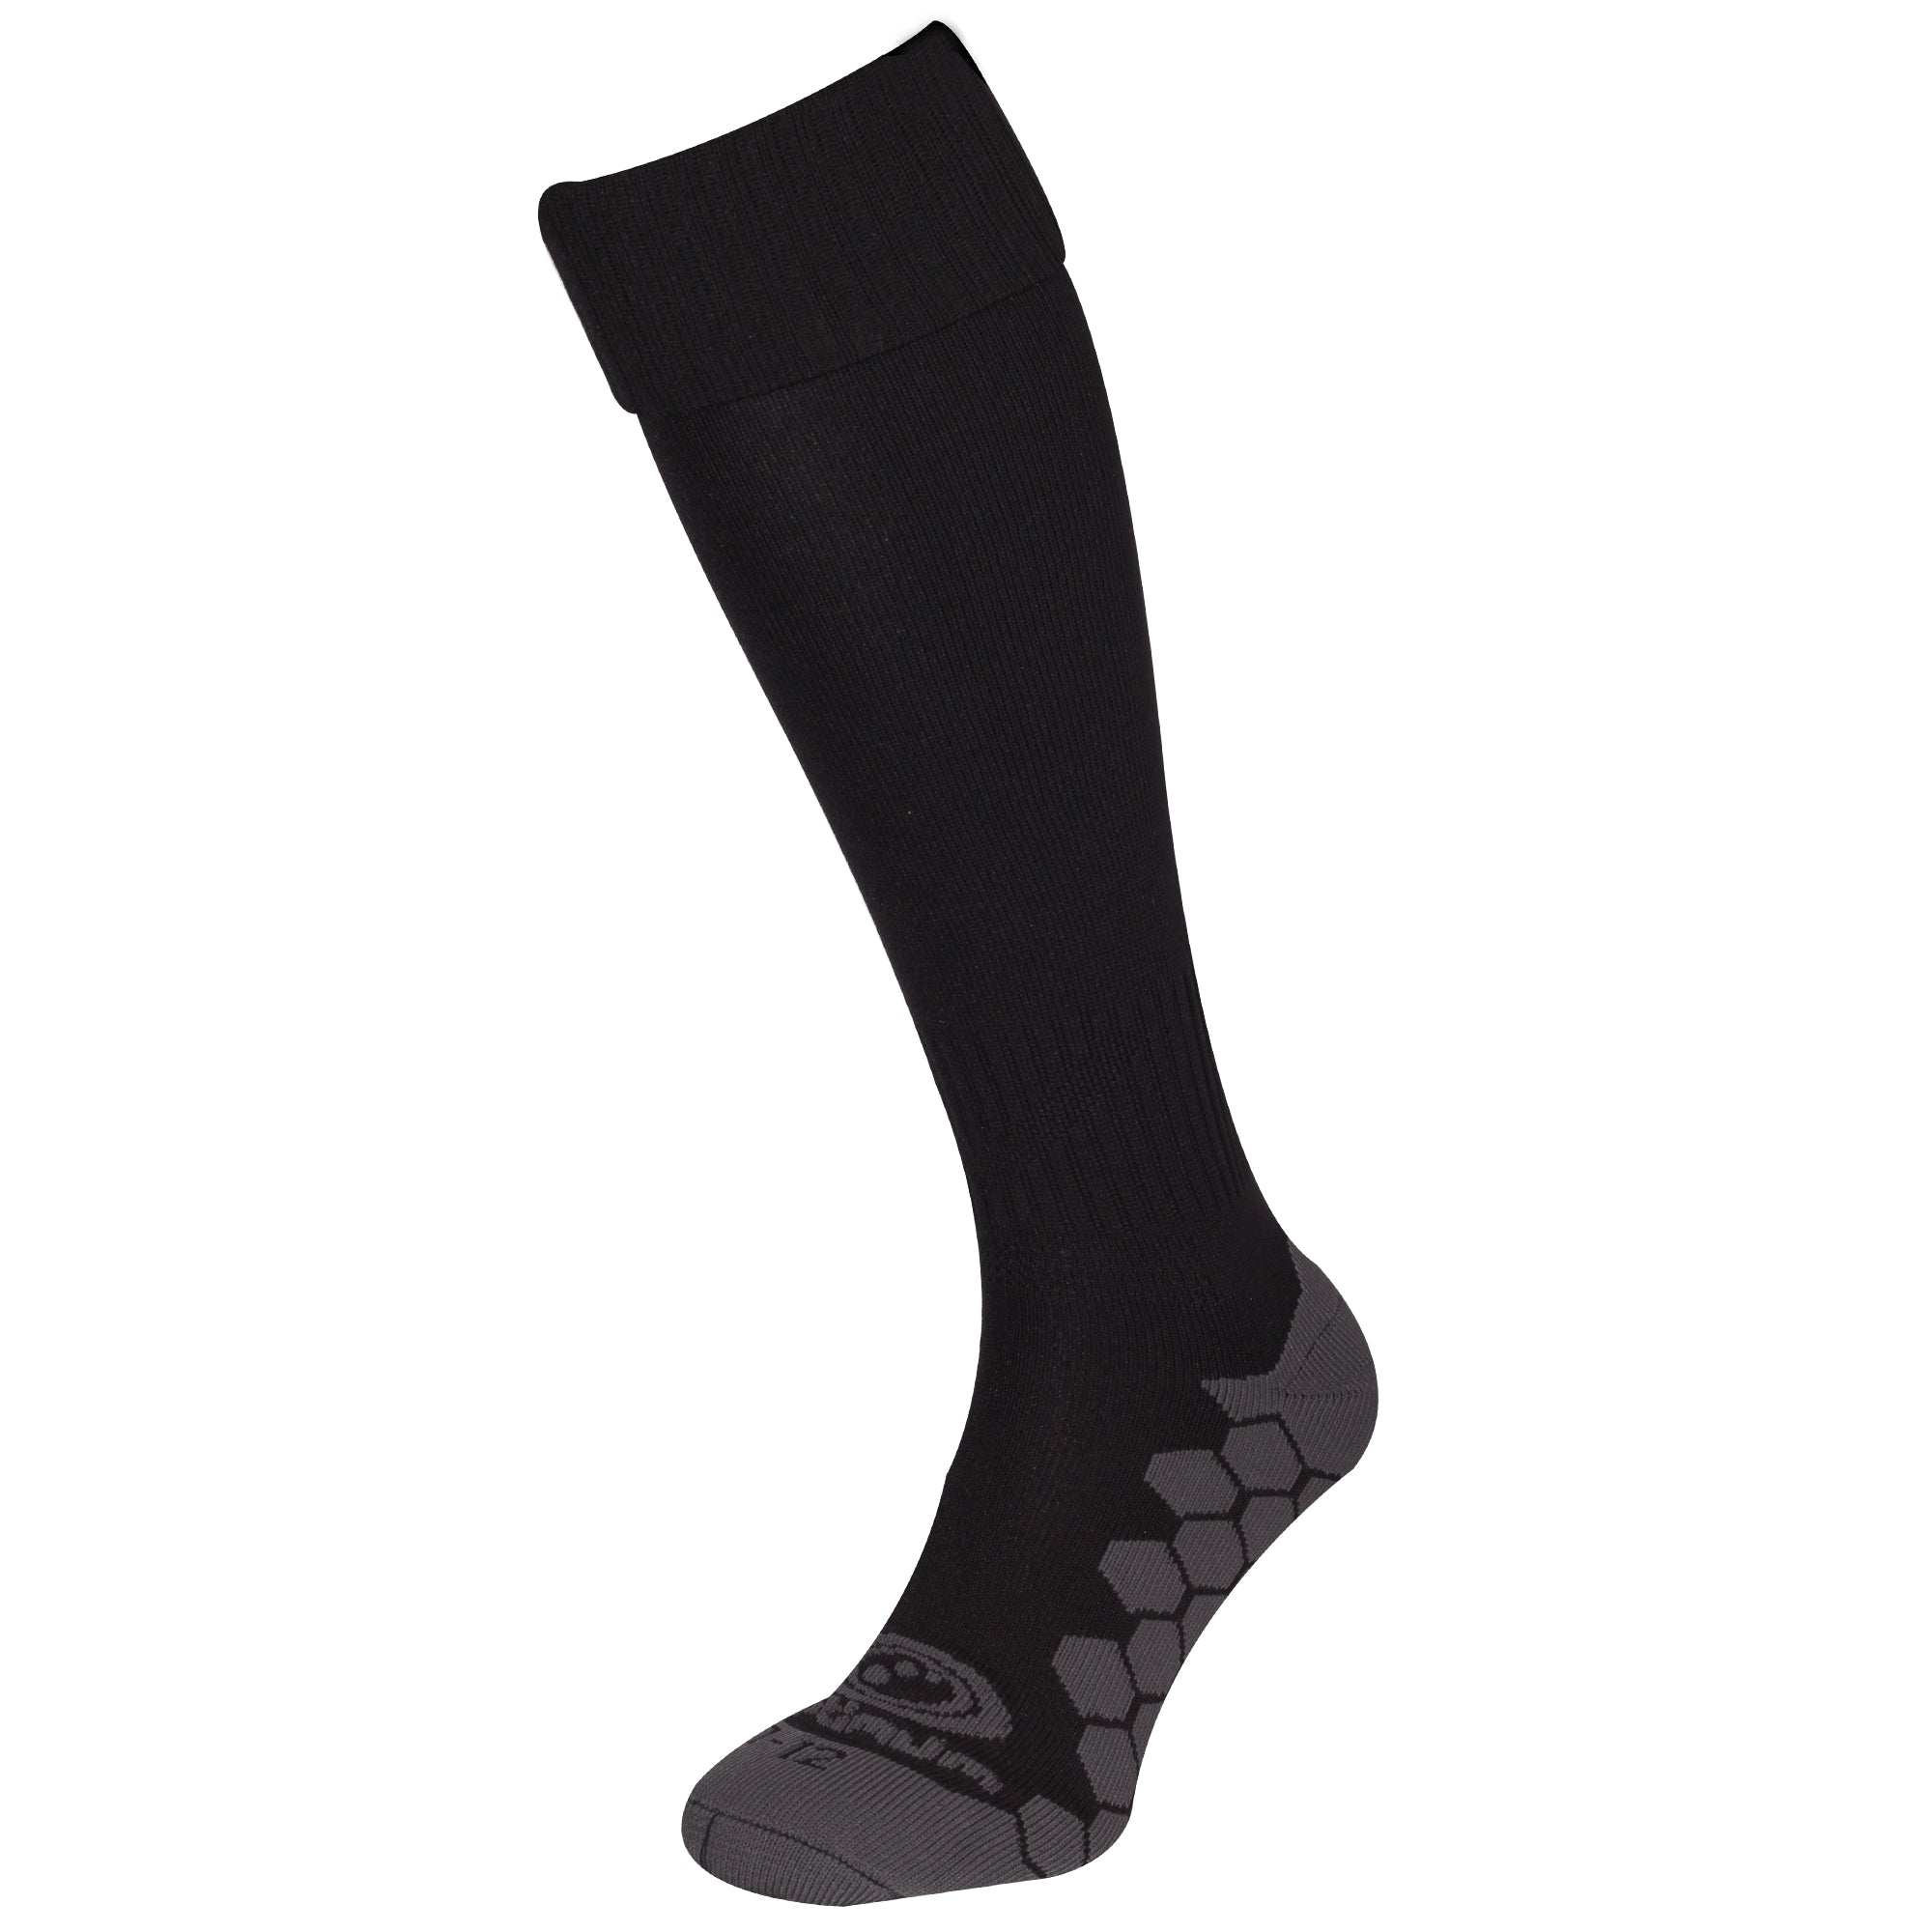 Black Classico Sock - Optimum